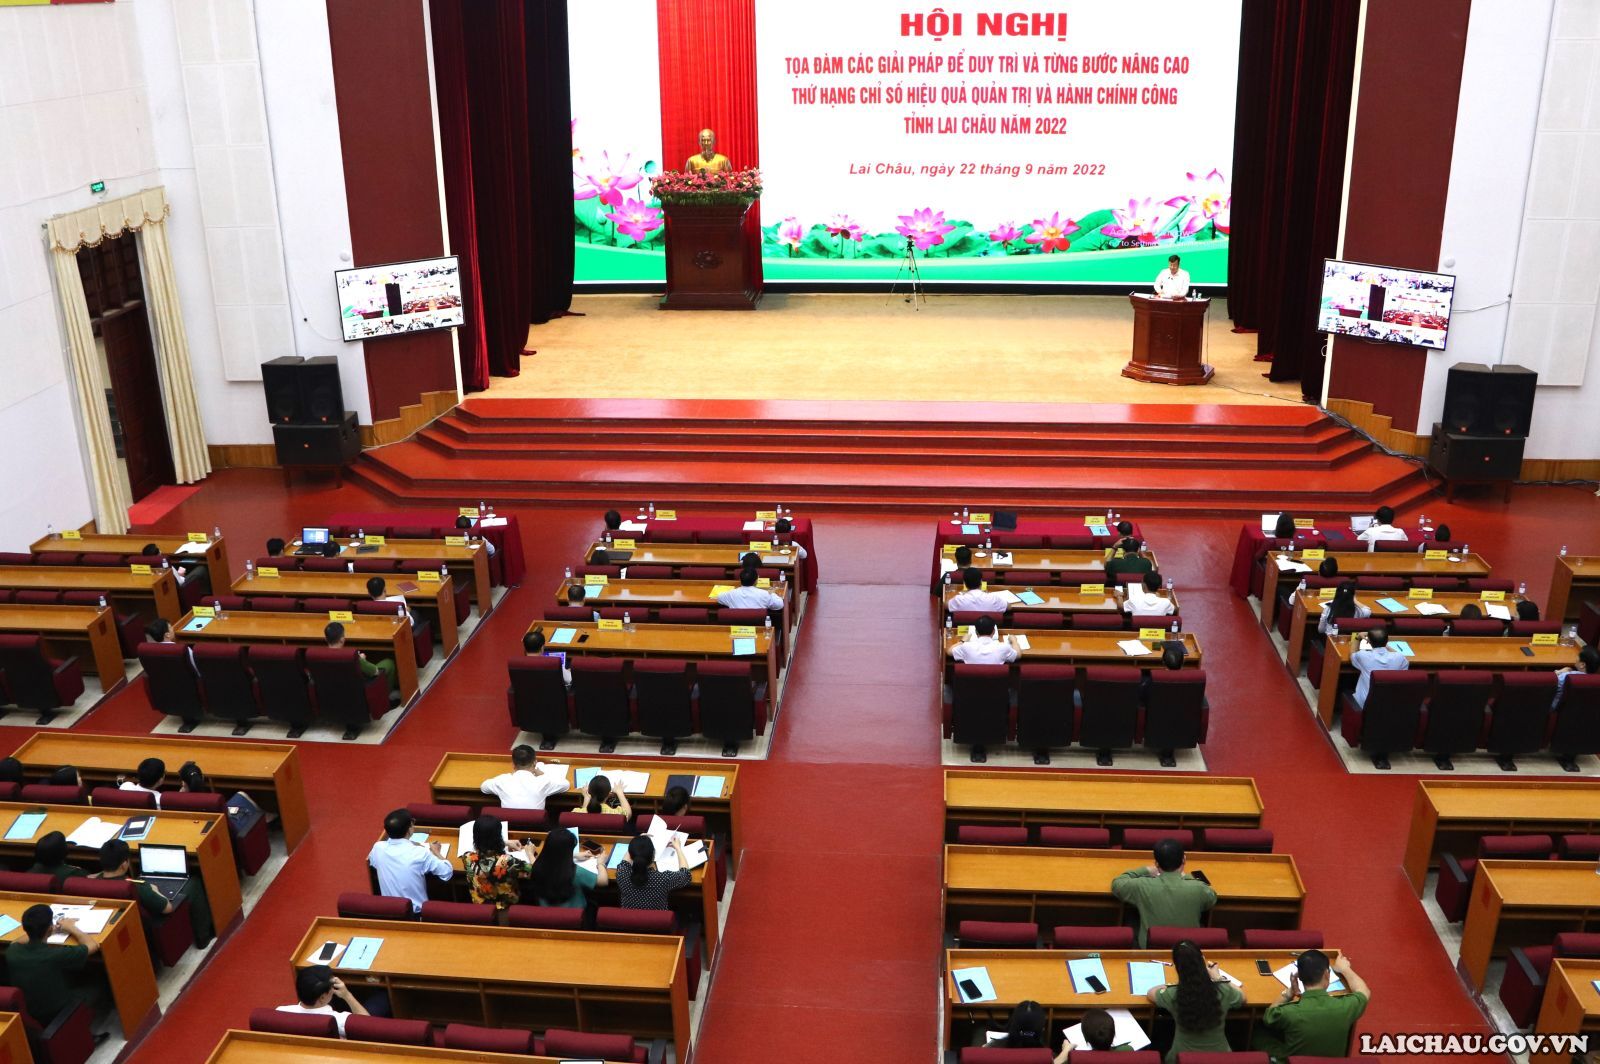 Lai Châu: Hội nghị Tọa đàm các giải pháp để duy trì và từng bước nâng cao thứ hạng chỉ số hiệu quả quản trị và hành chính công tỉnh năm 2022